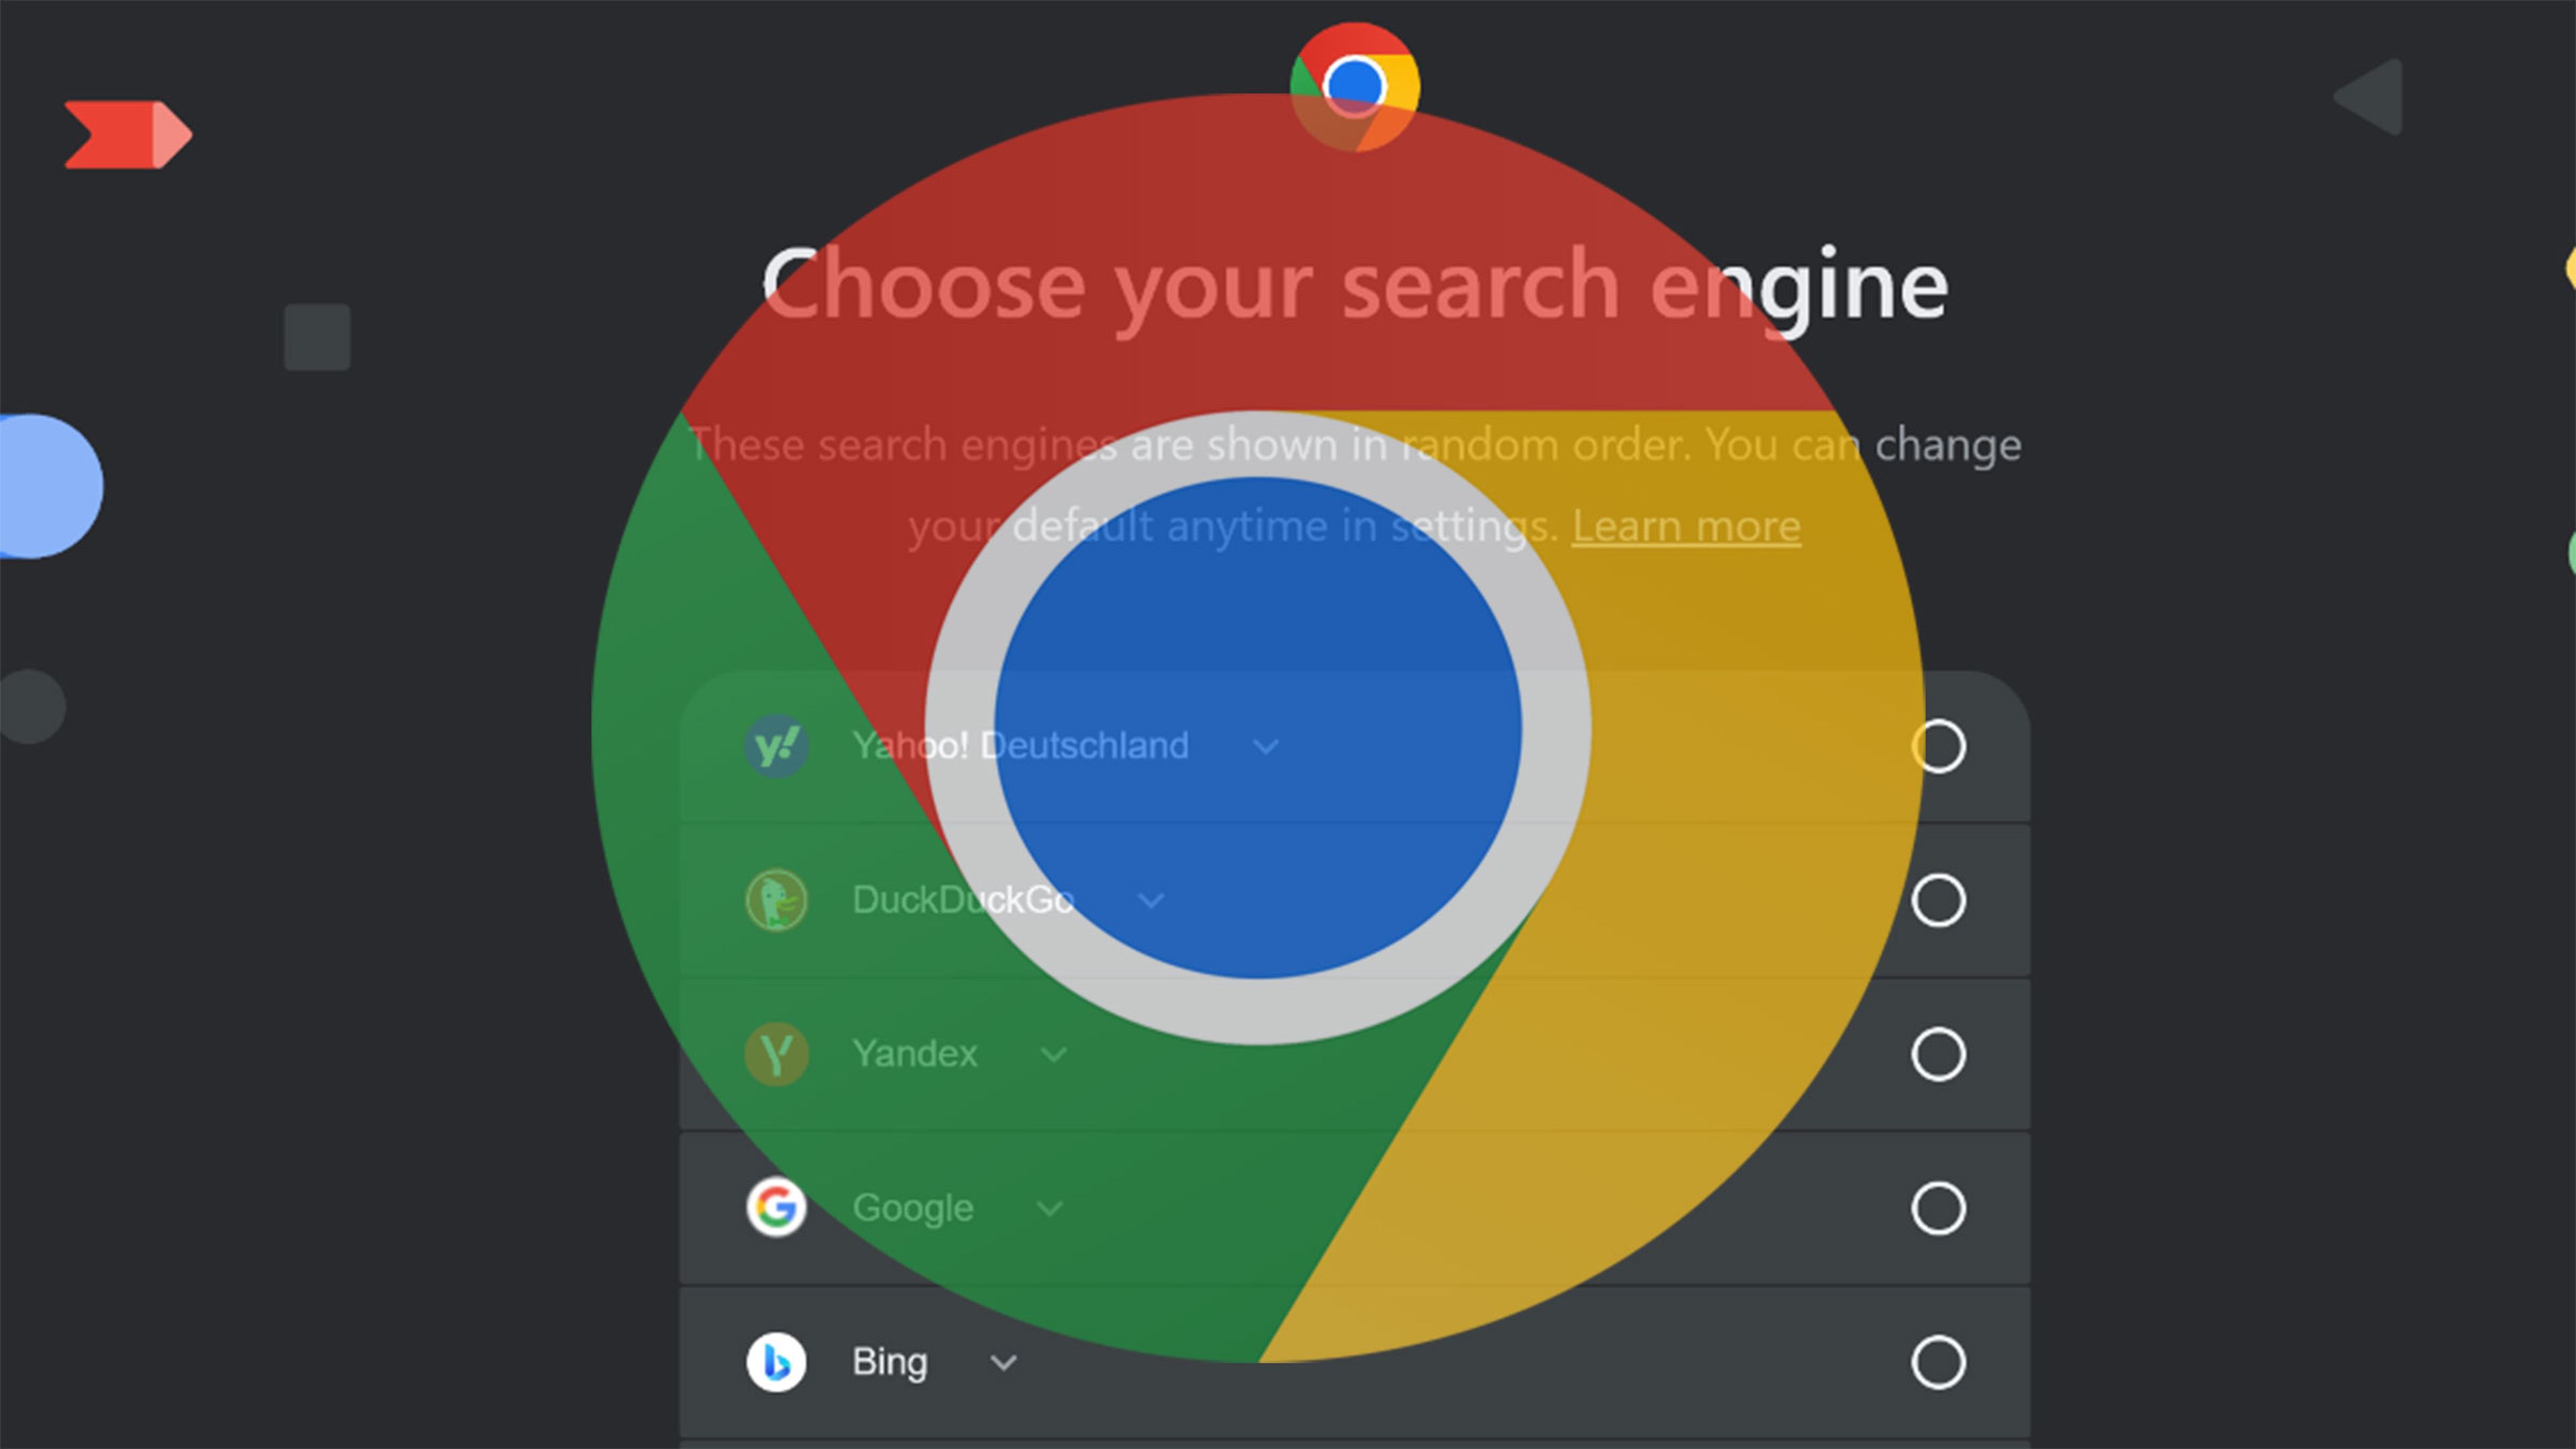 Chrome te obligará a elegir tu motor de búsqueda favorito a partir de esta fecha